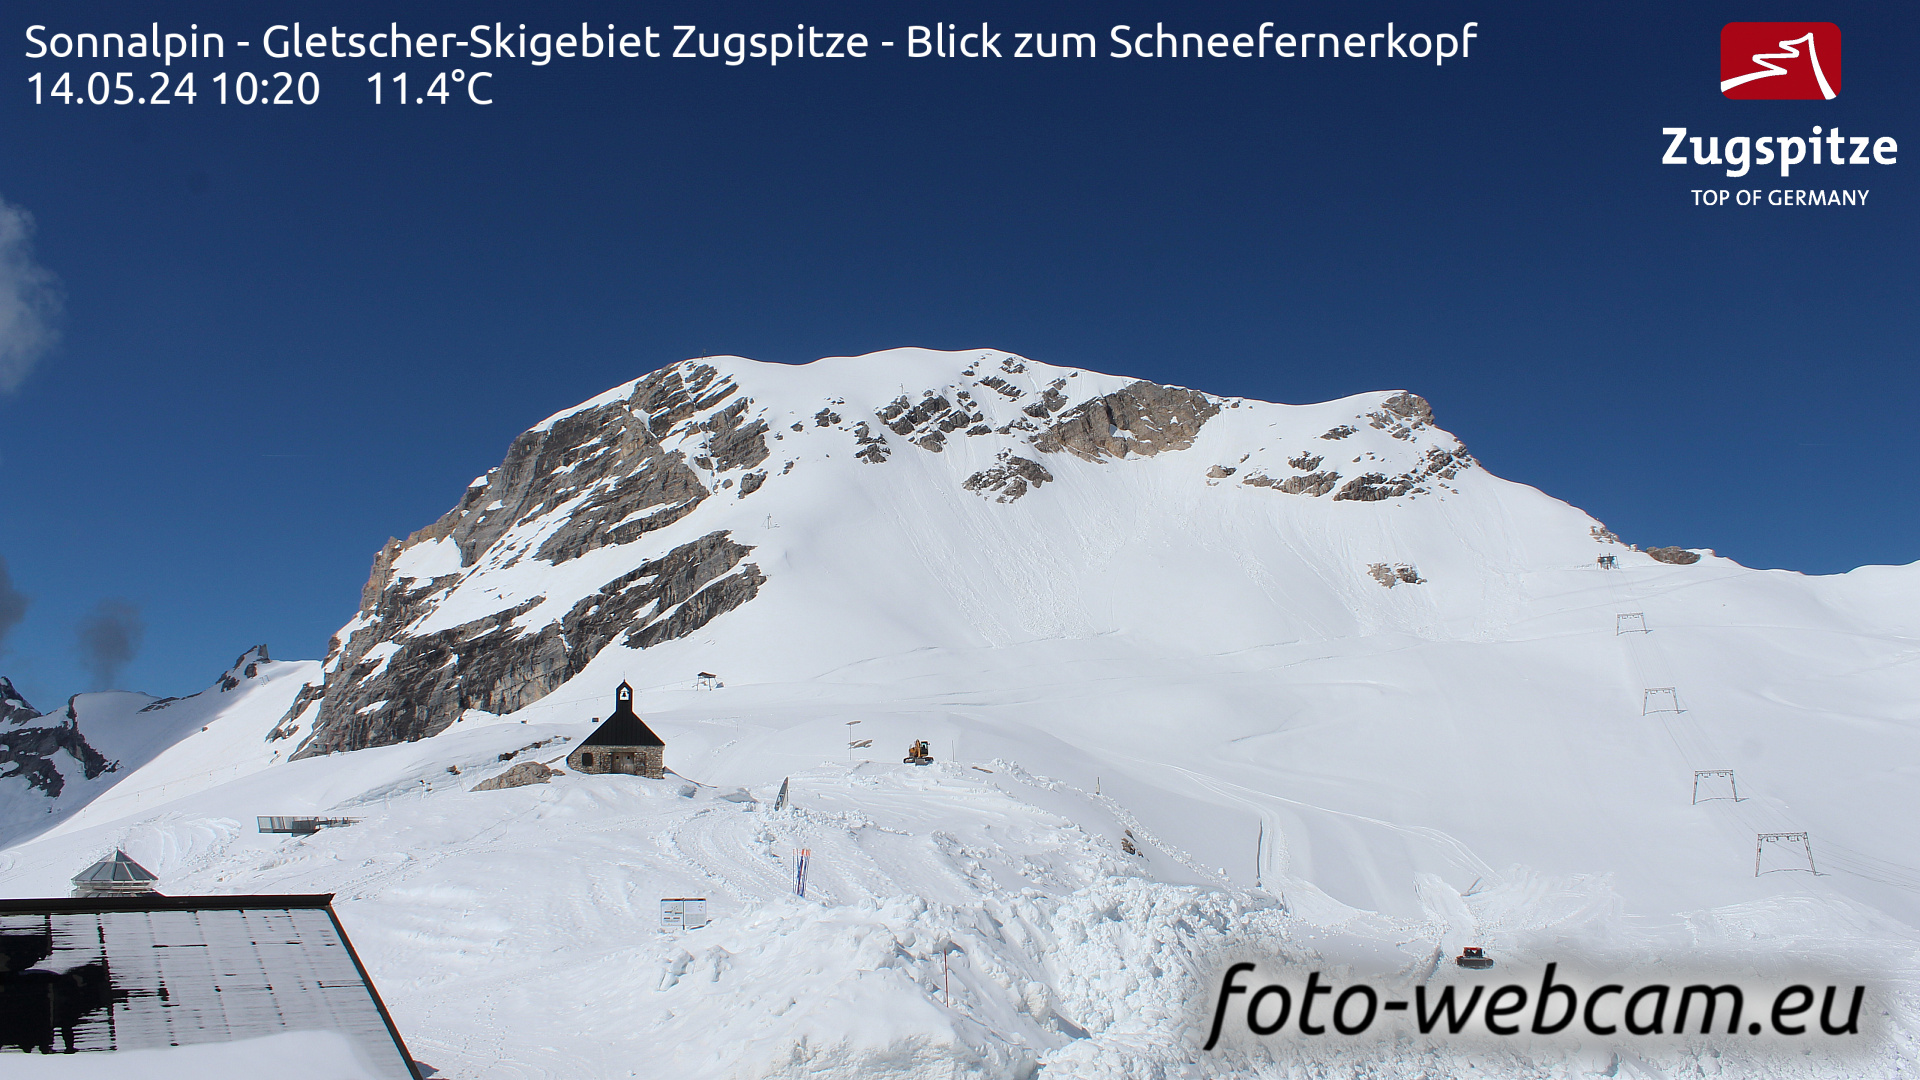 Zugspitze Wed. 10:24